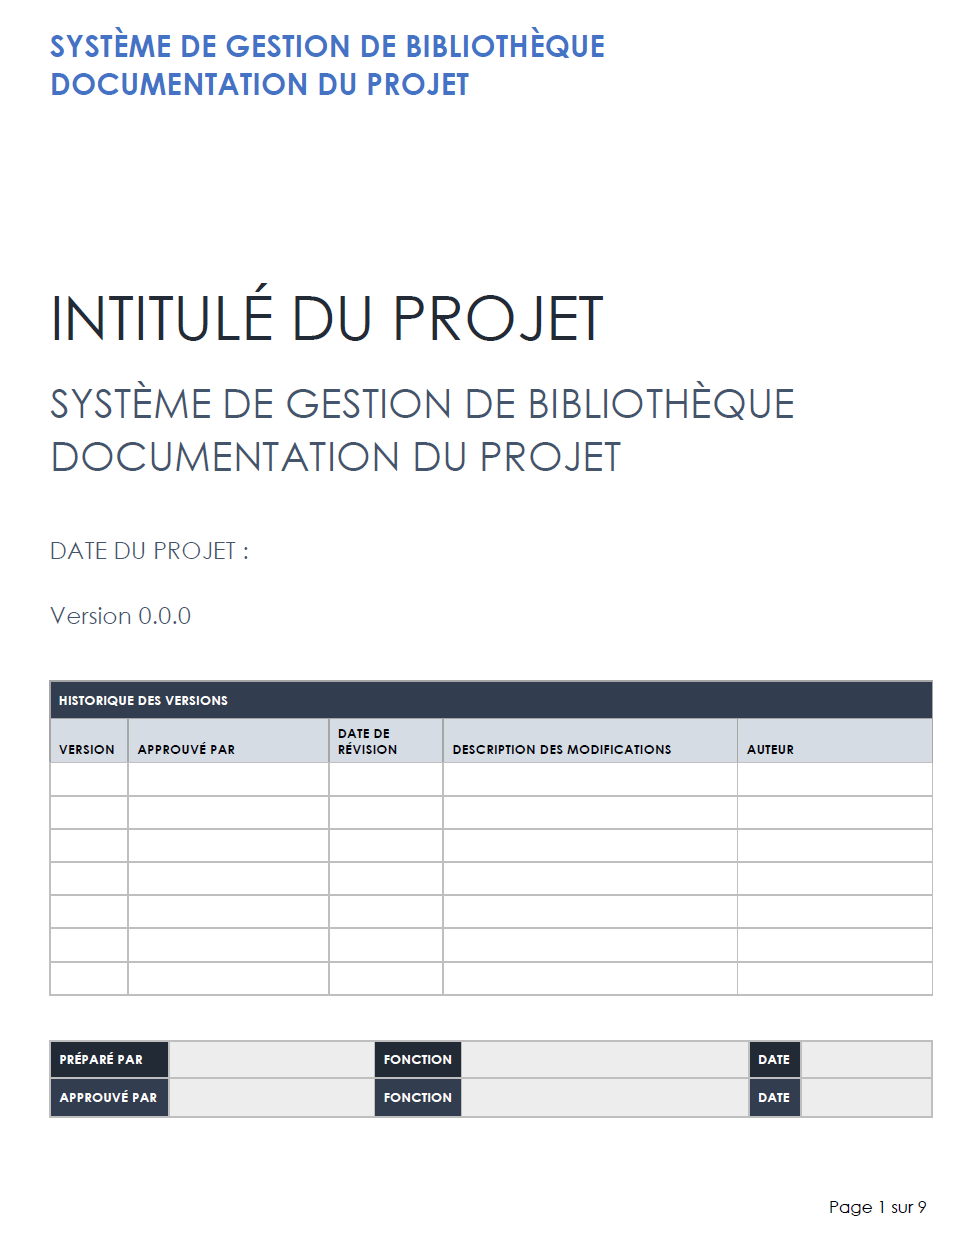 Documentation du projet du système de gestion de bibliothèque